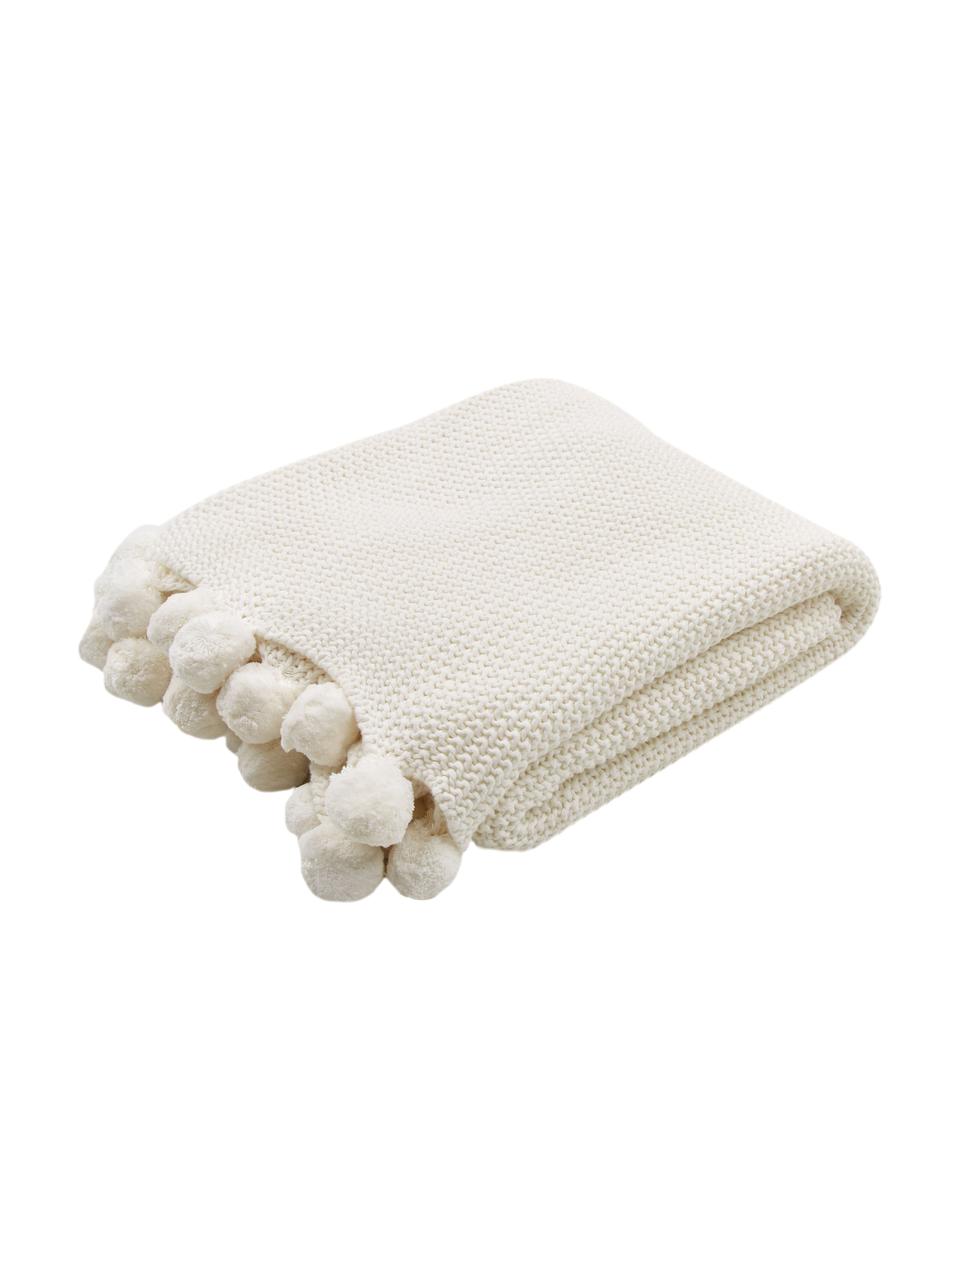 Strickdecke Molly mit Pompoms in Cremeweiß, 100% Baumwolle, Cremeweiß, B 130 x L 170 cm